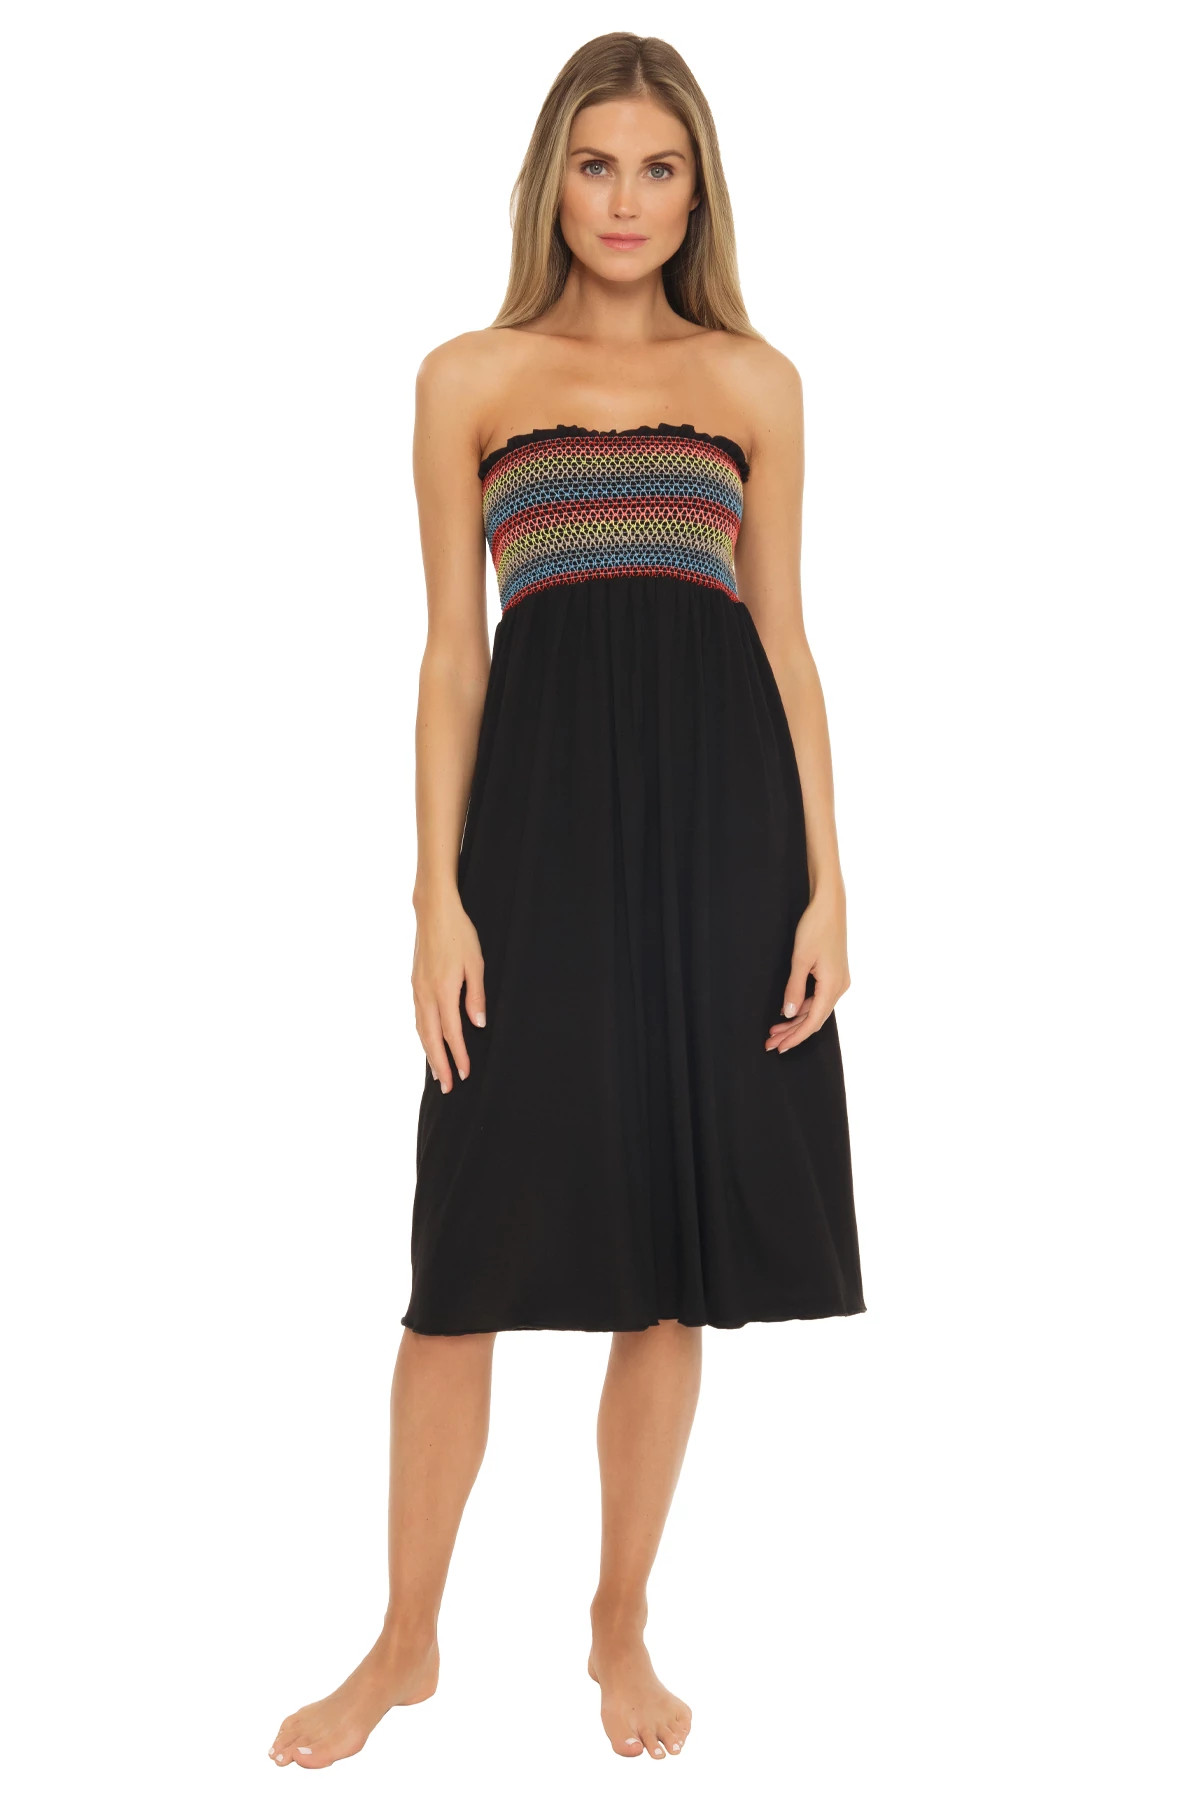 JET BLACK Smocked Convertible Dress/Skirt image number 3